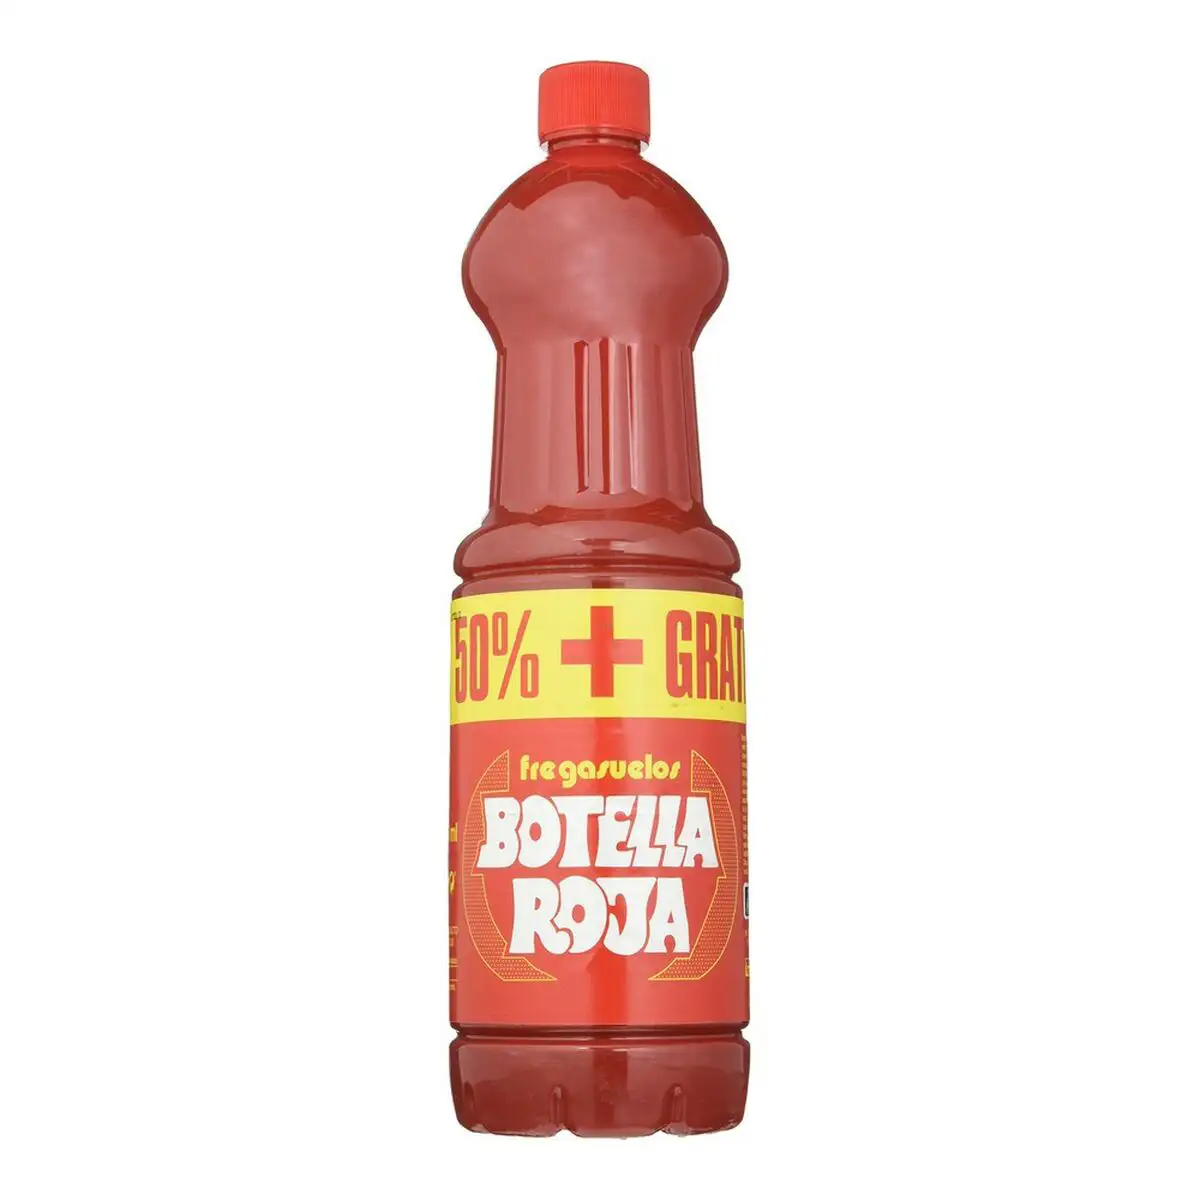 Nettoyant de sols botella roja 164131 500 ml 1 l _9247. DIAYTAR SENEGAL - L'Art de Vivre en Couleurs. Découvrez notre boutique en ligne et trouvez des produits qui ajoutent une palette vibrante à votre quotidien.